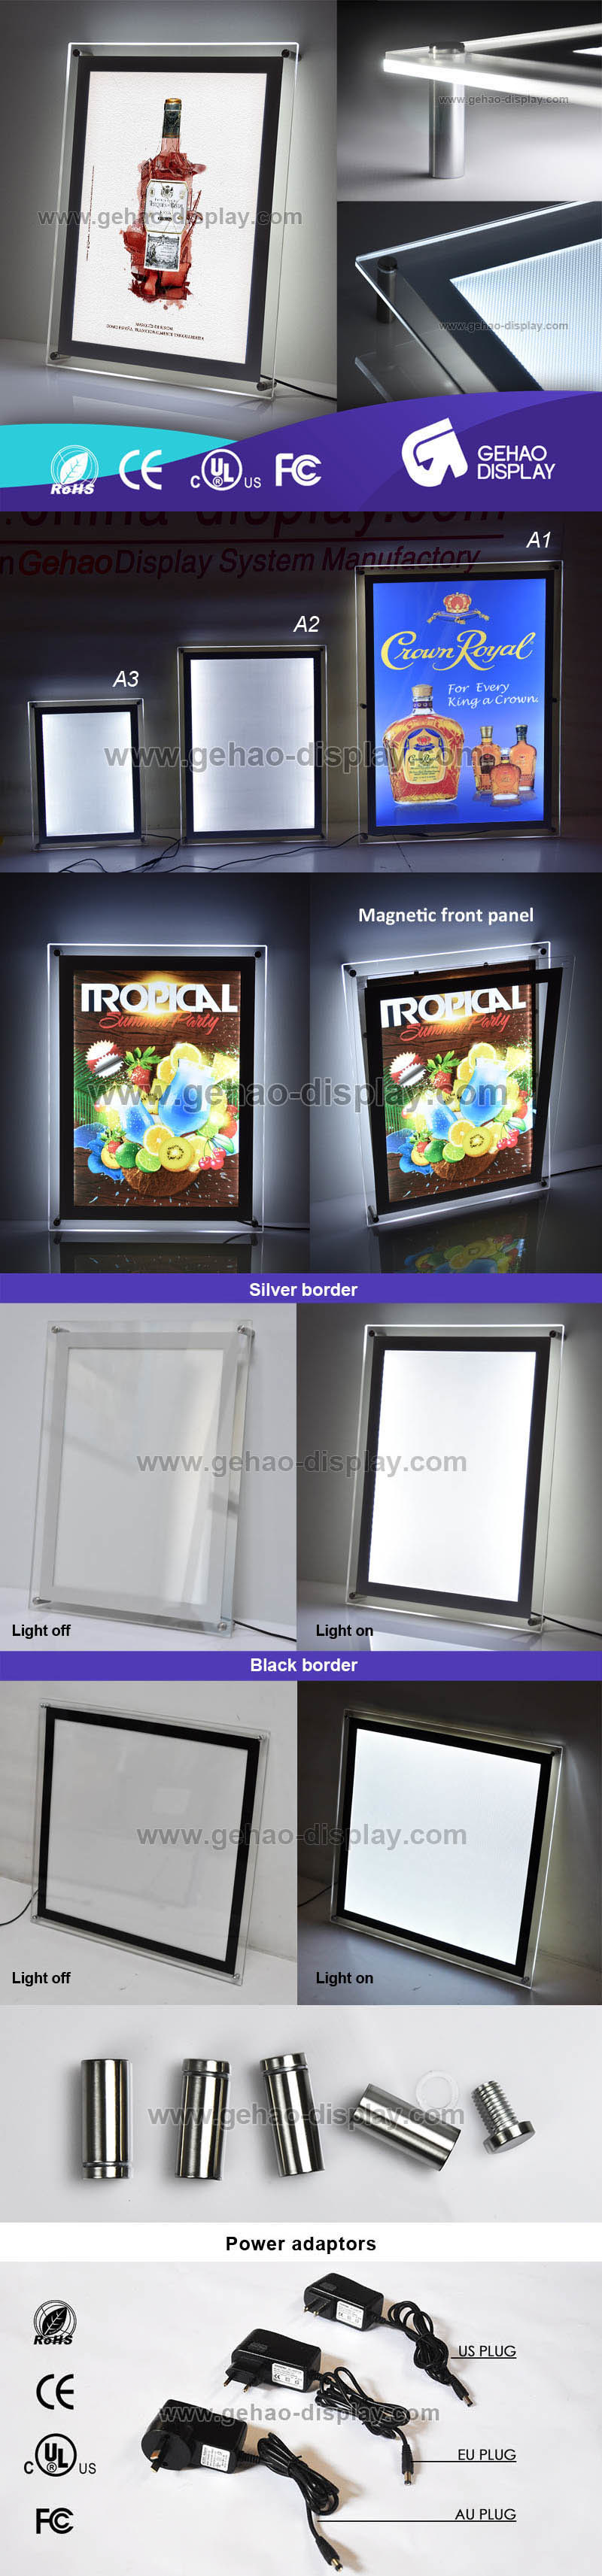 Magnetic Acrylic Display Super Slim Crystal LED Illuminated Photo Frame